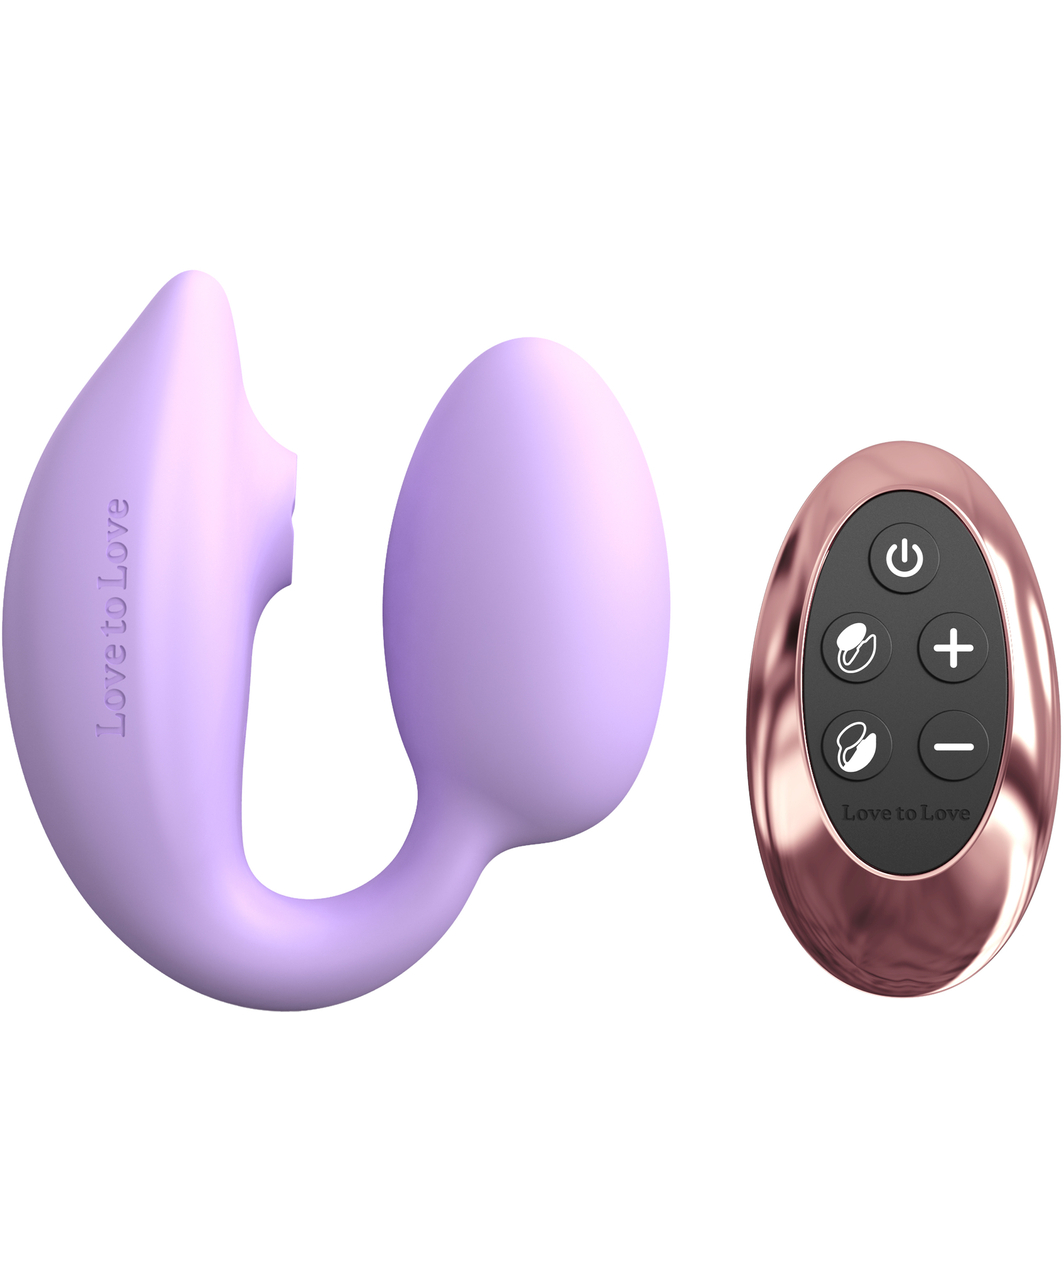 Love to Love Wonderlover vibruojantys kiaušinėlis su klitorio stimuliatoriumi